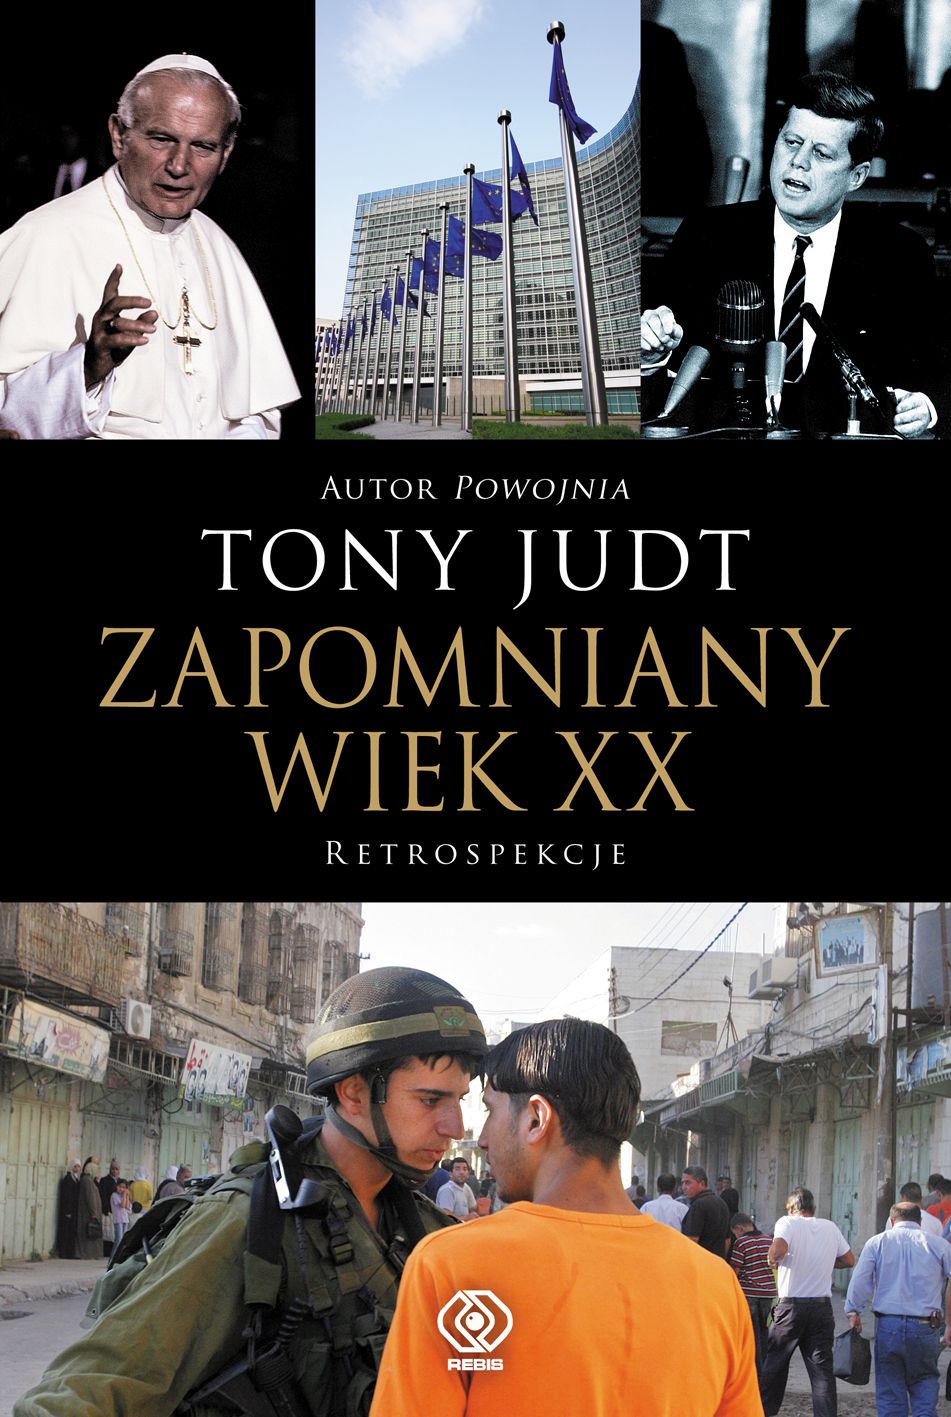  "Zapomniany wiek XX", Tony Judt, zbiór esejów - nowe wydanie 